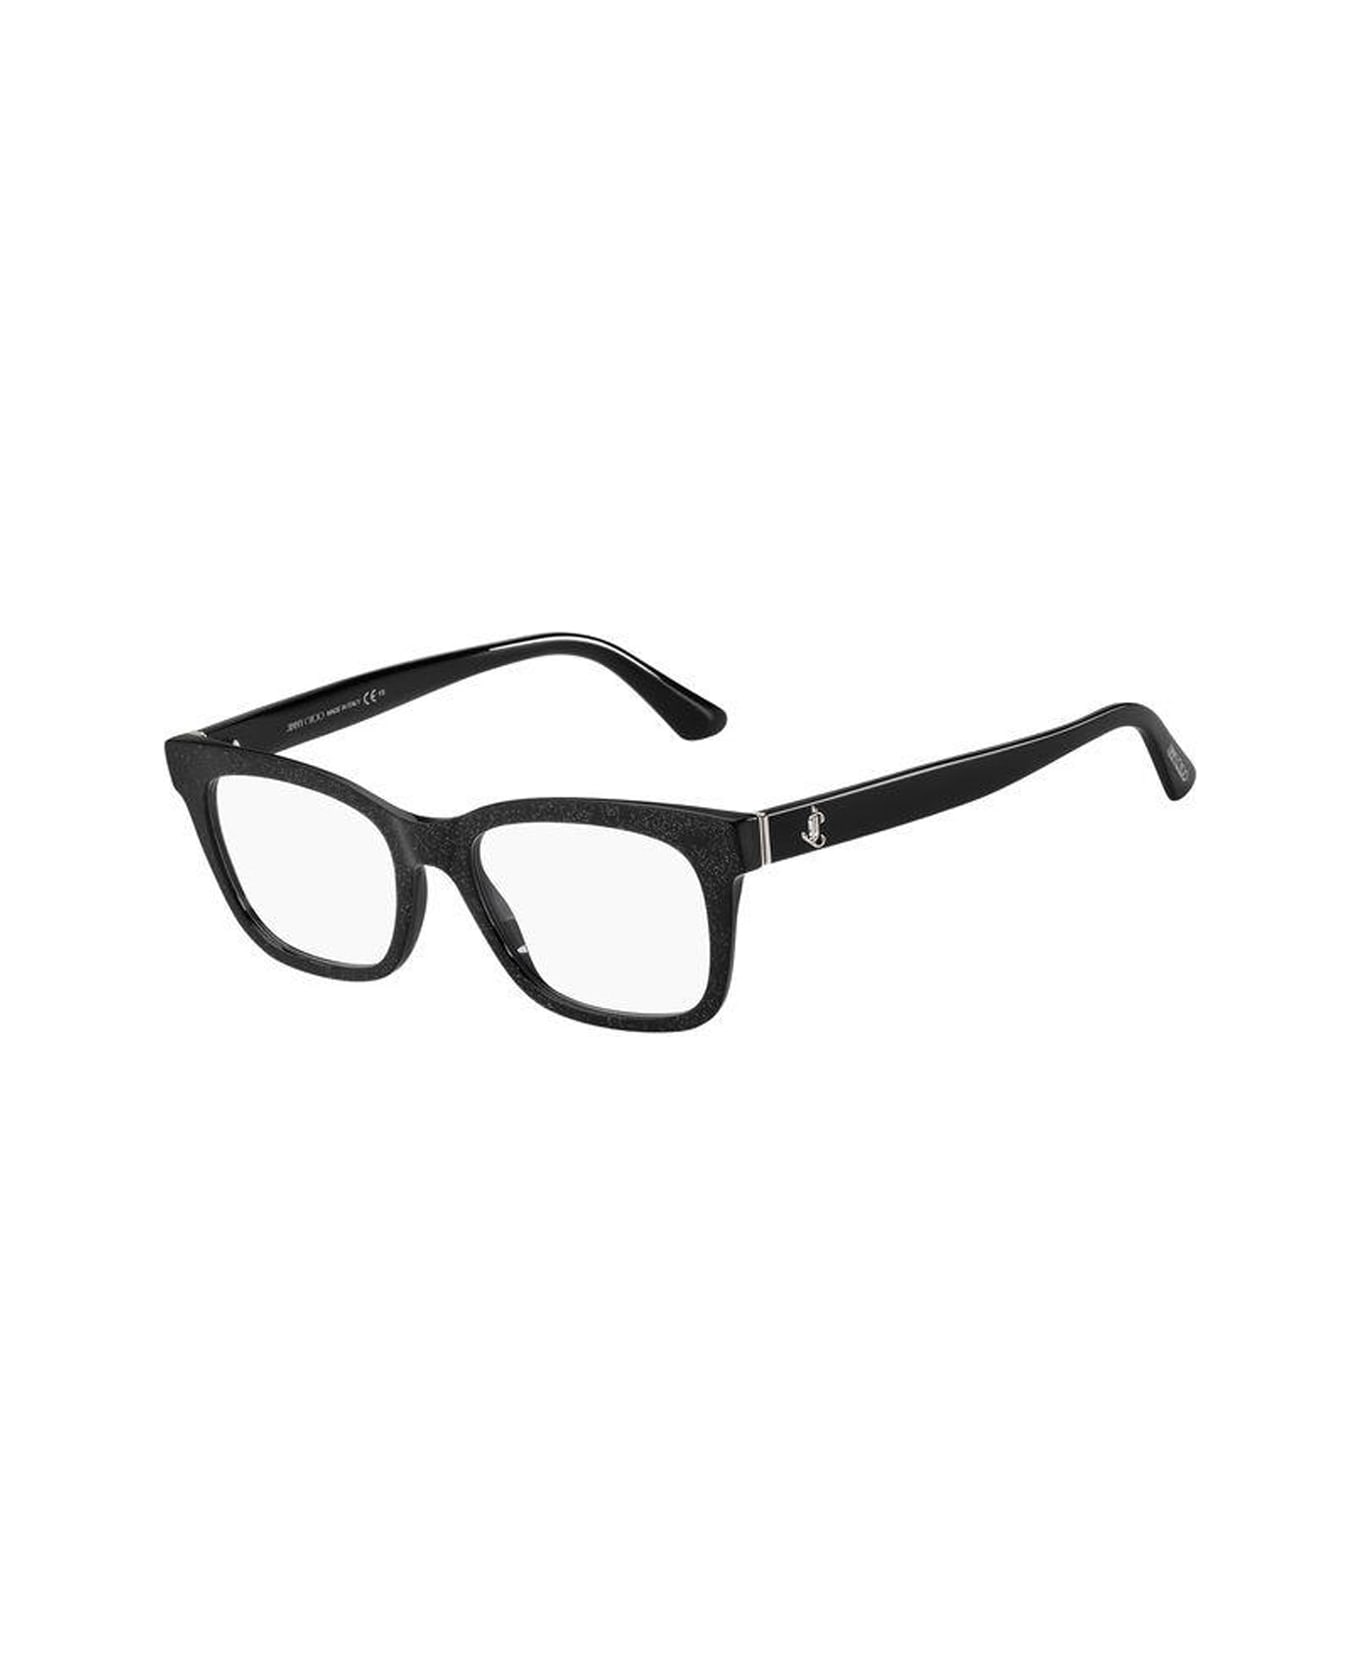 Jimmy Choo Eyewear Jc277 Glasses - Nero アイウェア